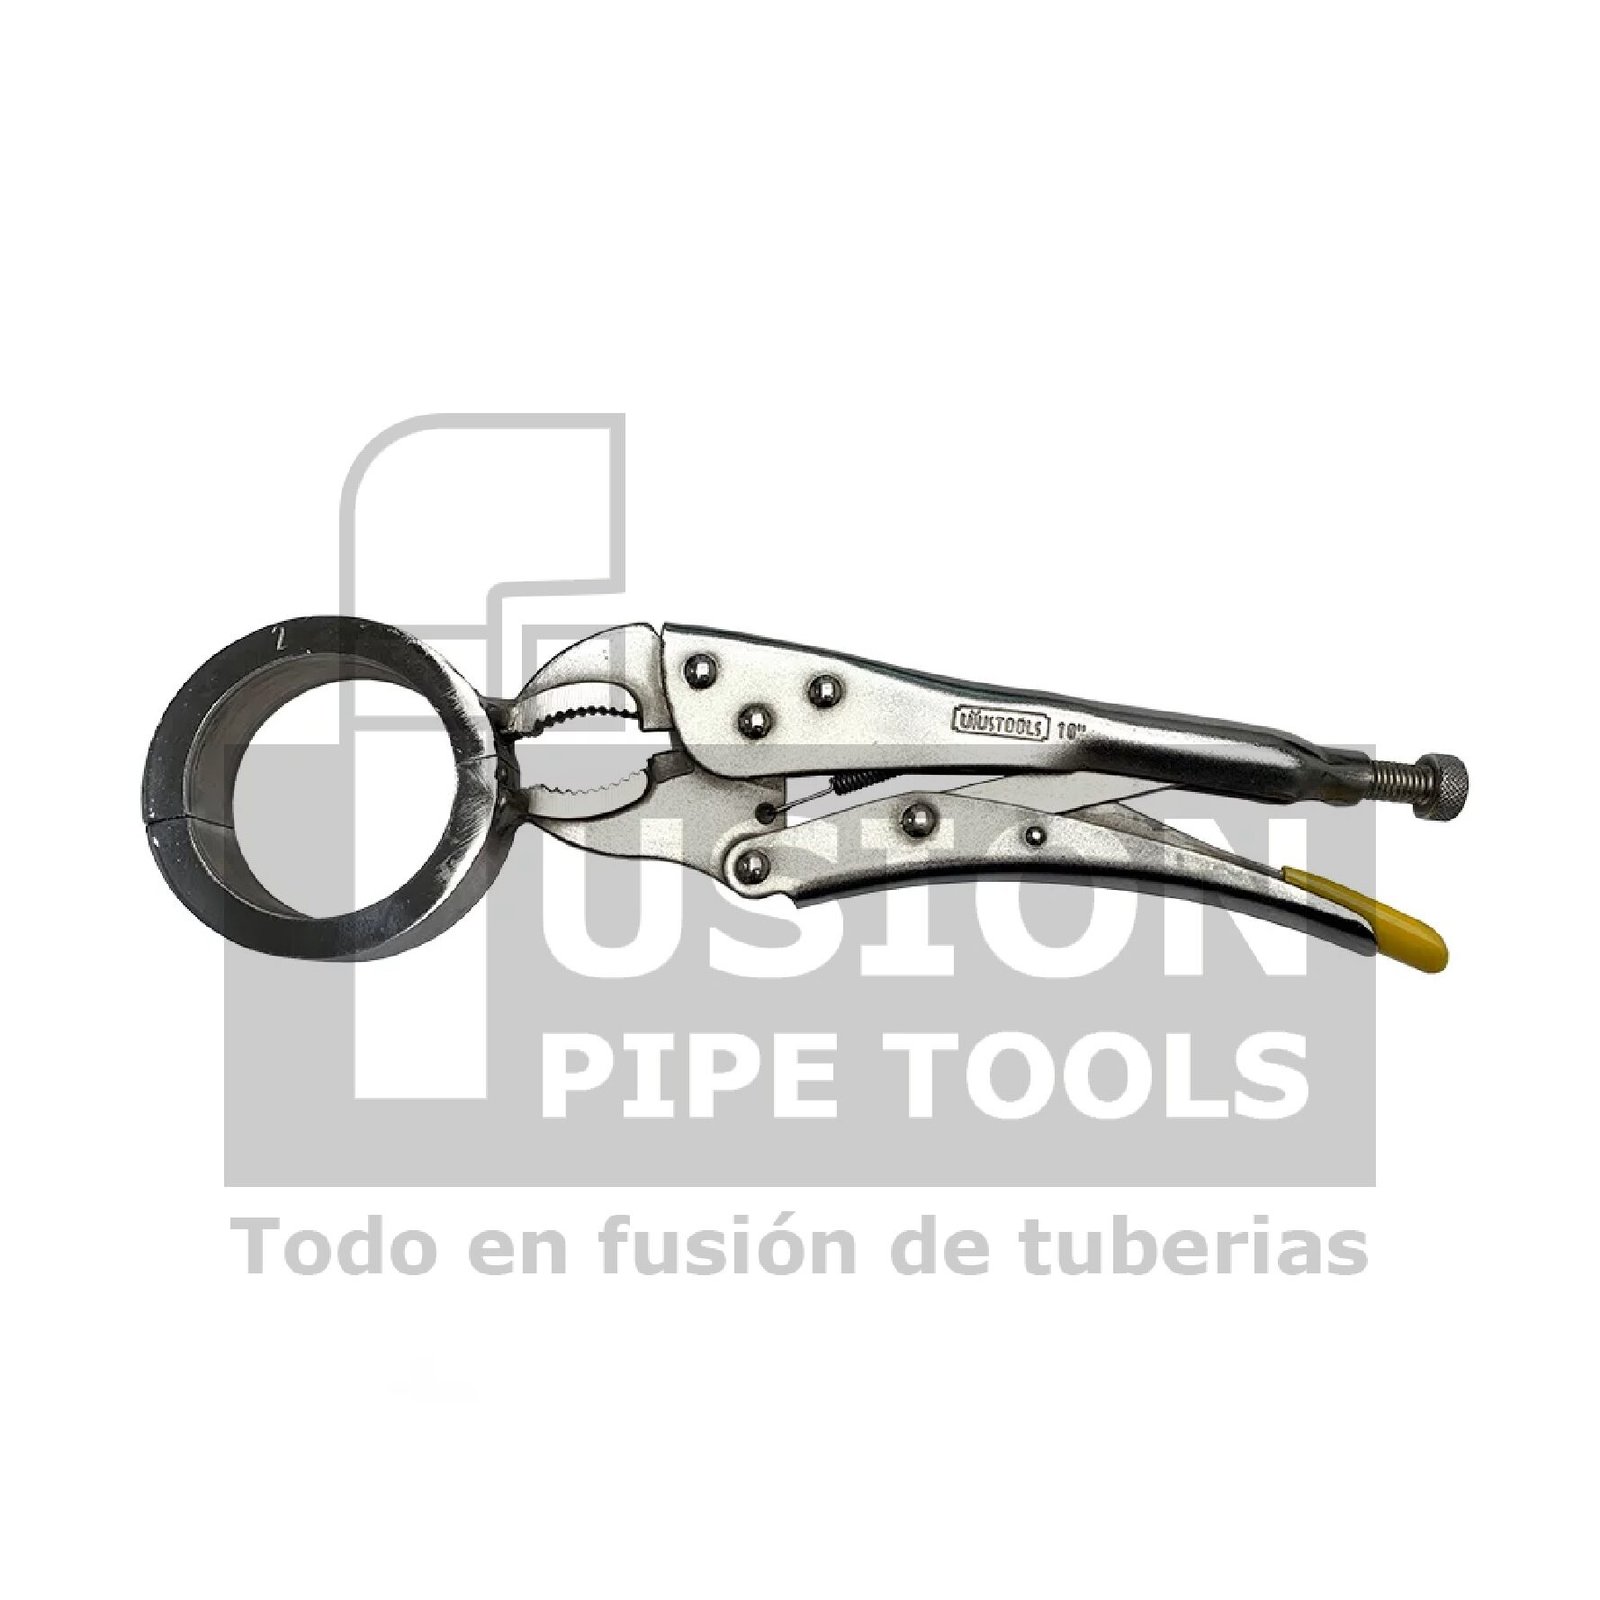 Bolsa Térmica para plancha - Fusión Pipe Tools S.A.S.